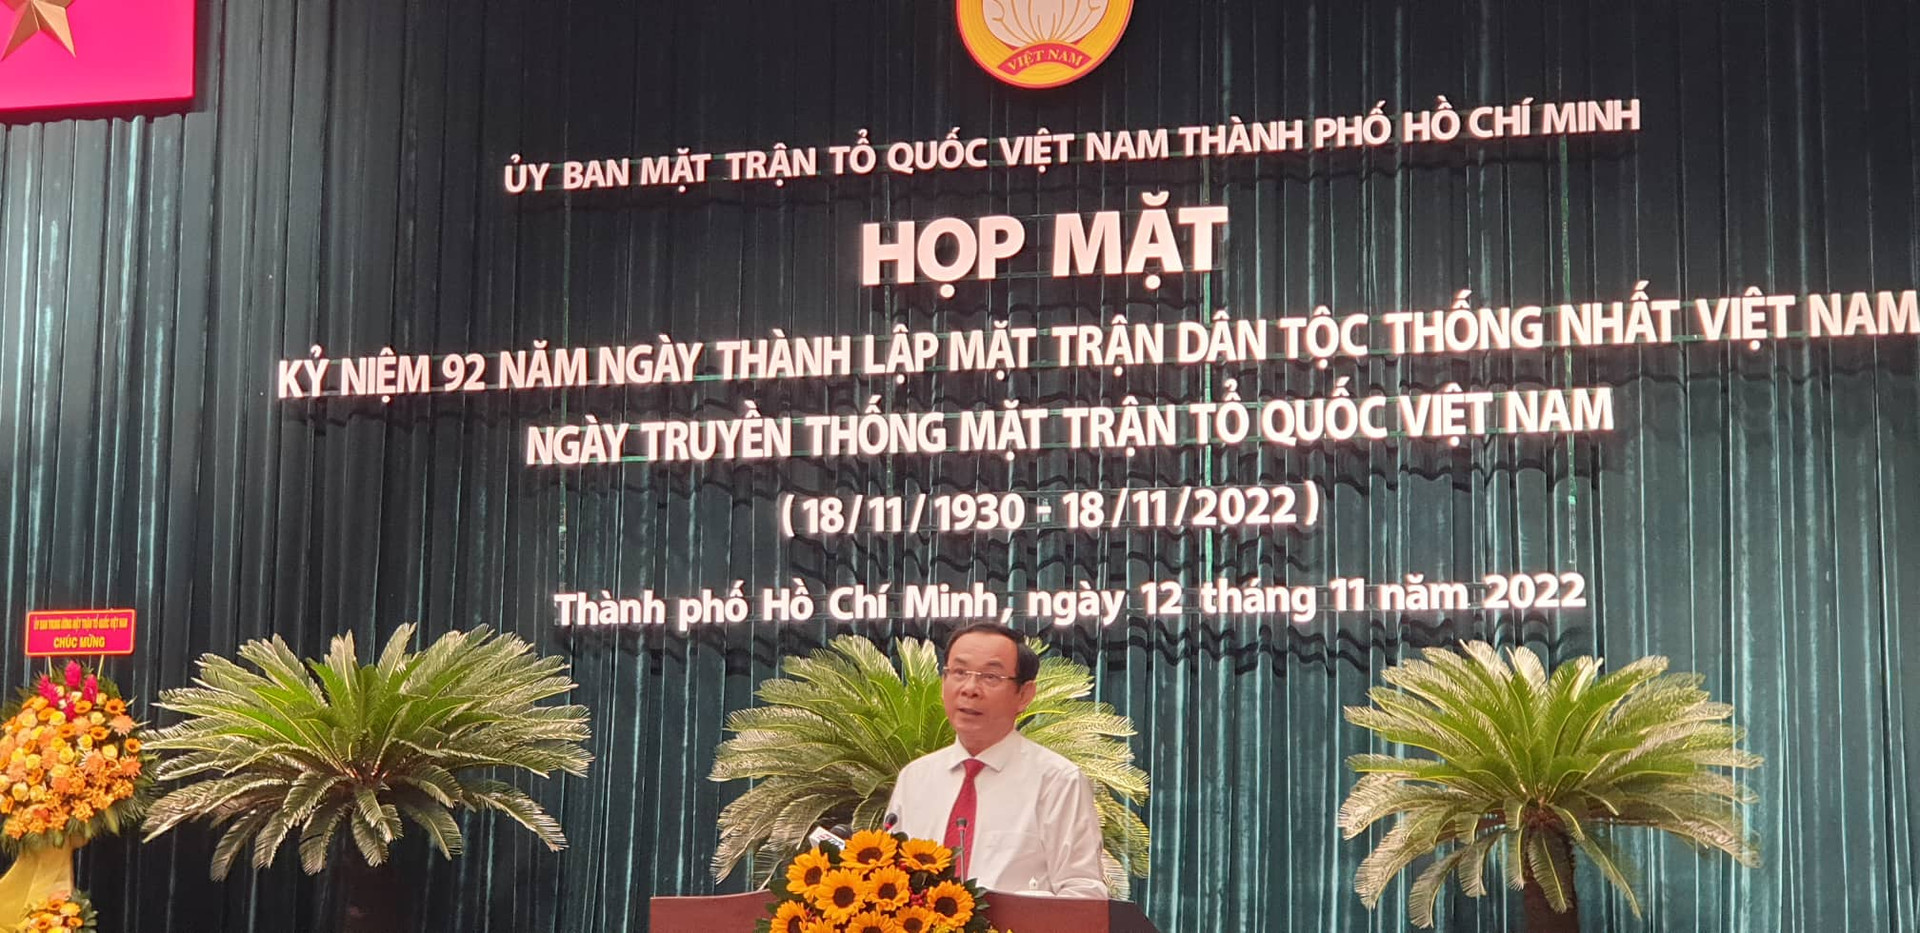 Bí thư Thành ủy TP HCM Nguyễn Văn Nên đề nghị MTTQ Việt Nam TP HCM chú trọng thực hiện 5 nhiệm vụ quan trọng.